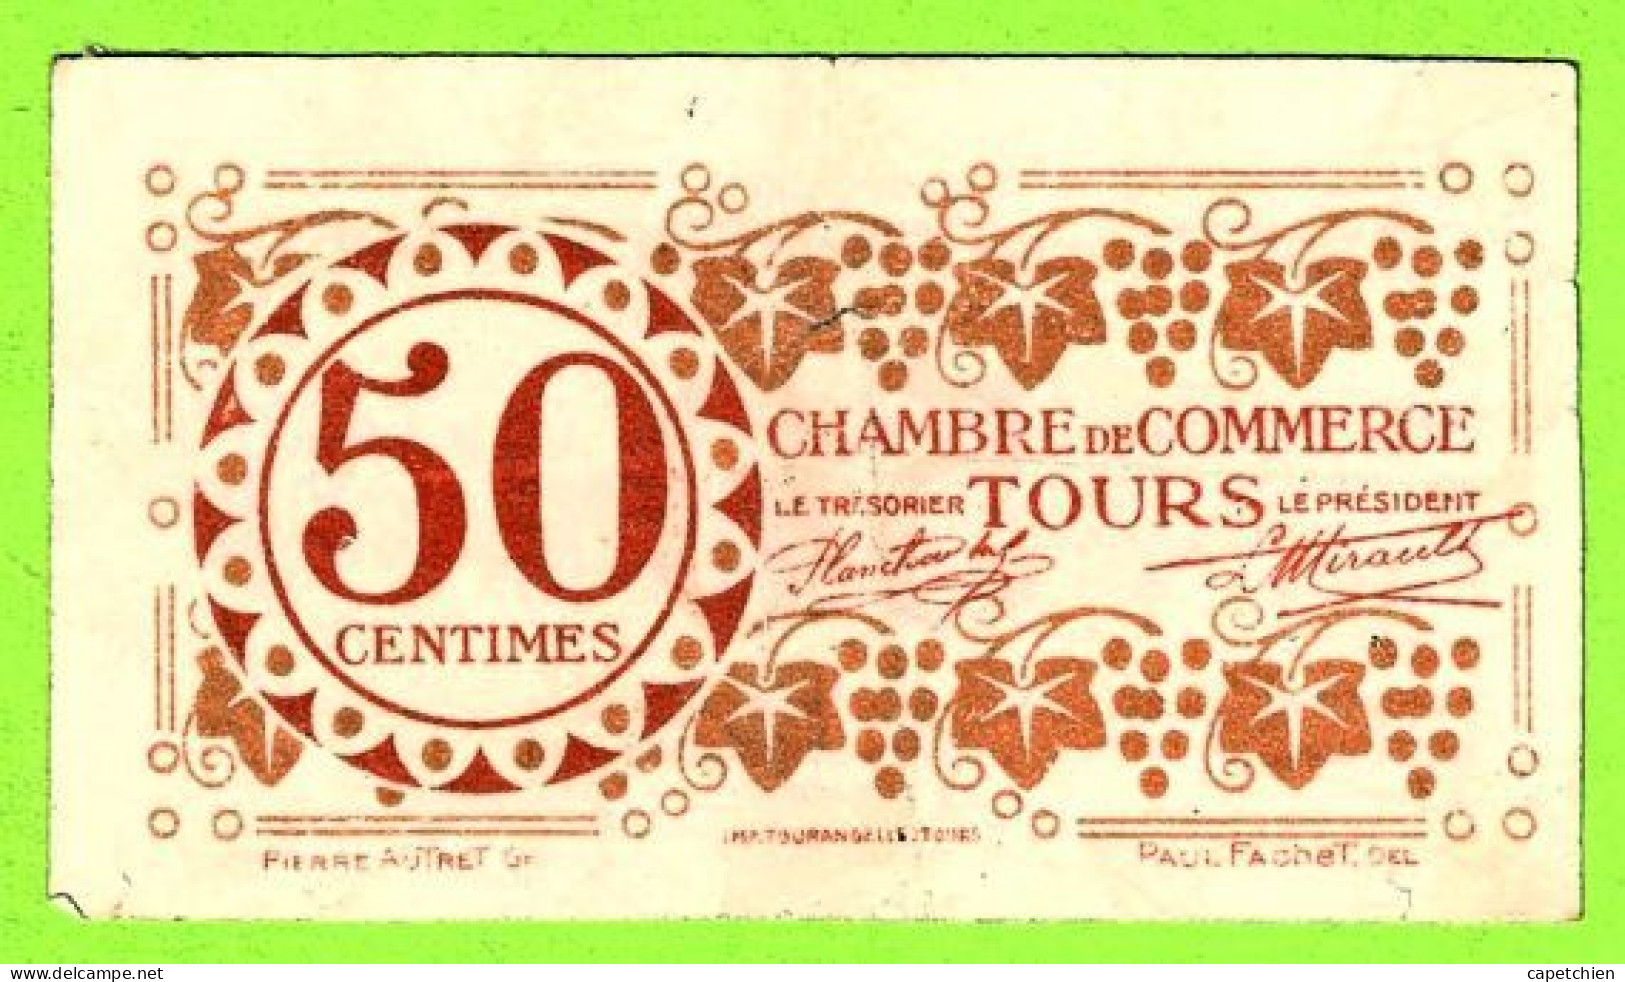 FRANCE / CHAMBRE De COMMERCE De TOURS / 50 CENTIMES/ 27 DECEMBRE 1920 / 461,639 / SERIE 3eme - Chamber Of Commerce